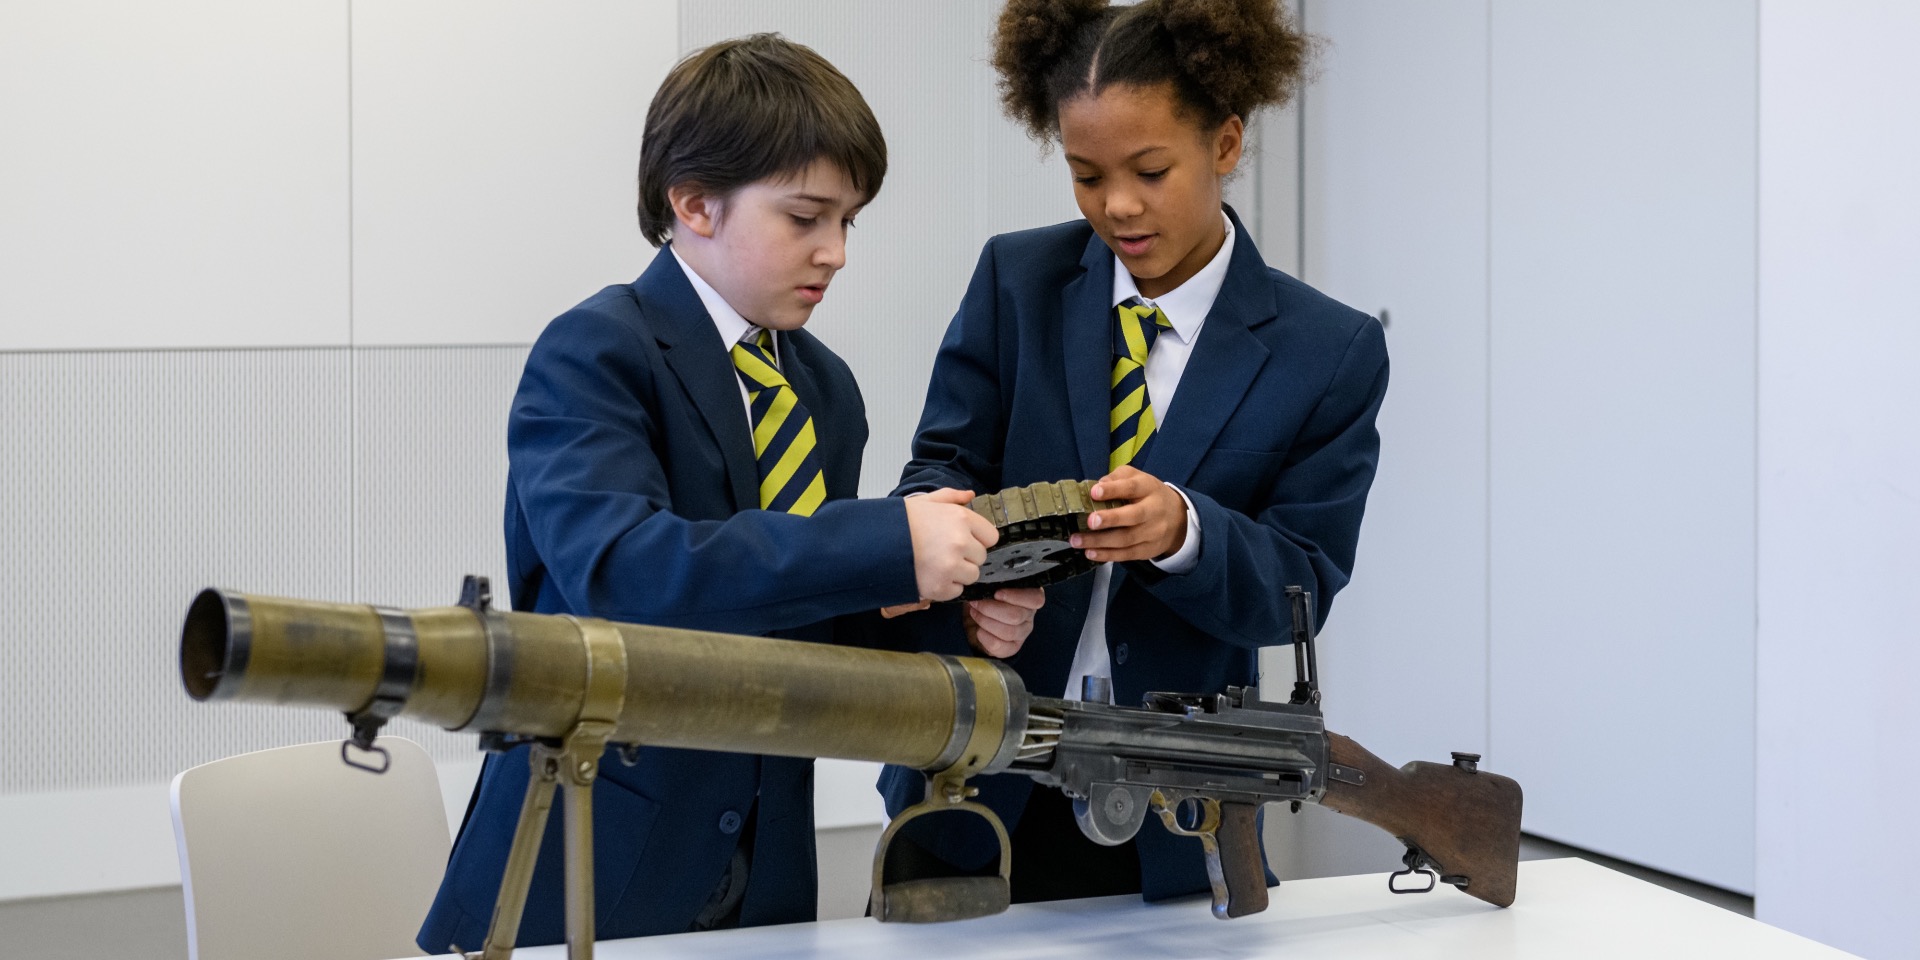 School children examining First World War weaponry